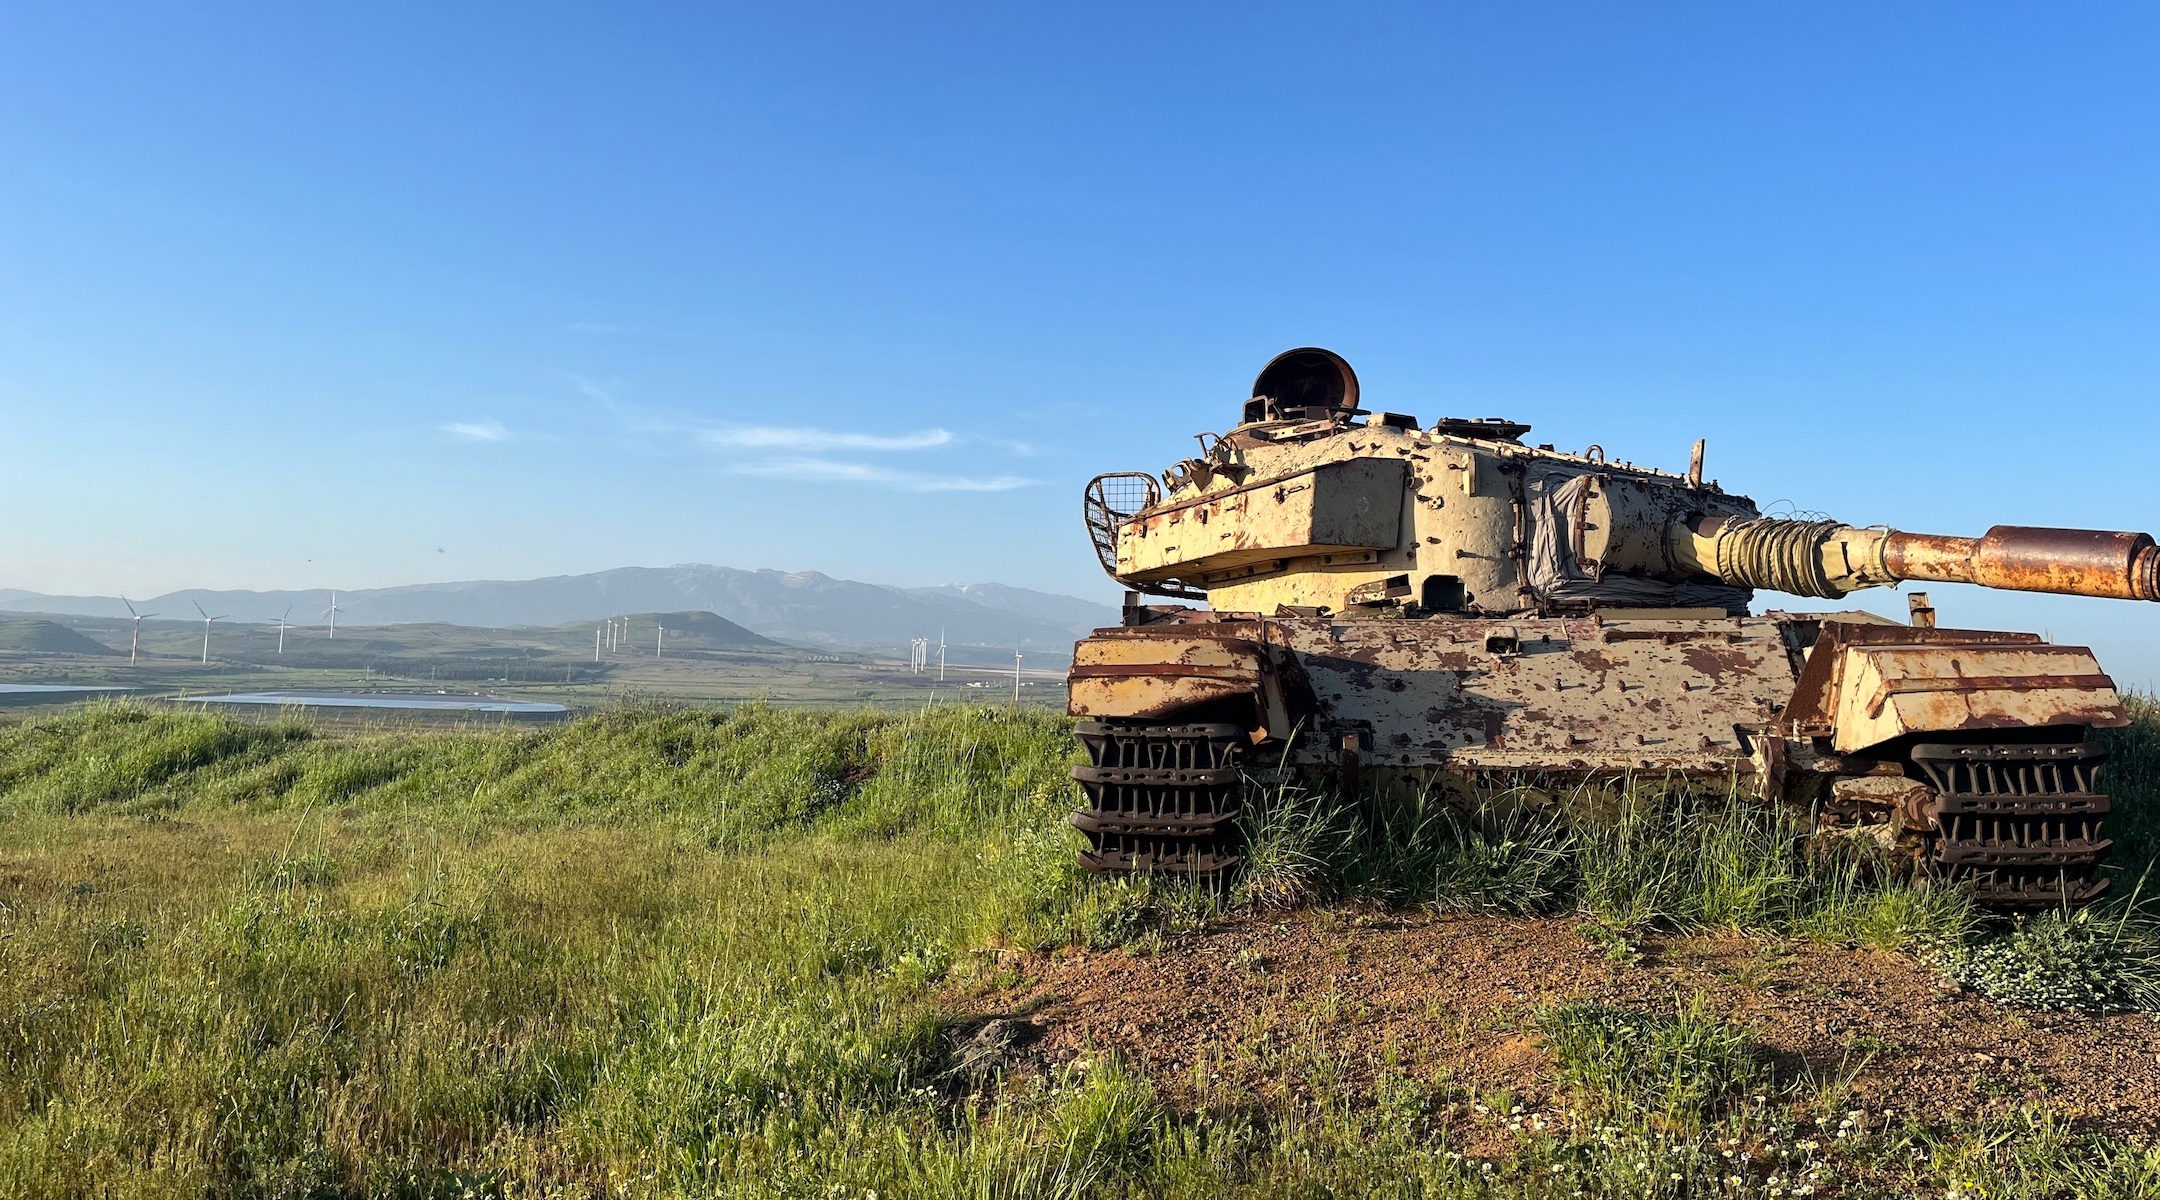 טנק מחליד על גבעה ברמת הגולן המשקיפה על סוריה הוא שריד למלחמה קודמת.  באזור נרשמו קרבות רציניים לאחרונה במהלך מלחמת יום הכיפורים ב-1973.  (אוריאל היילמן)